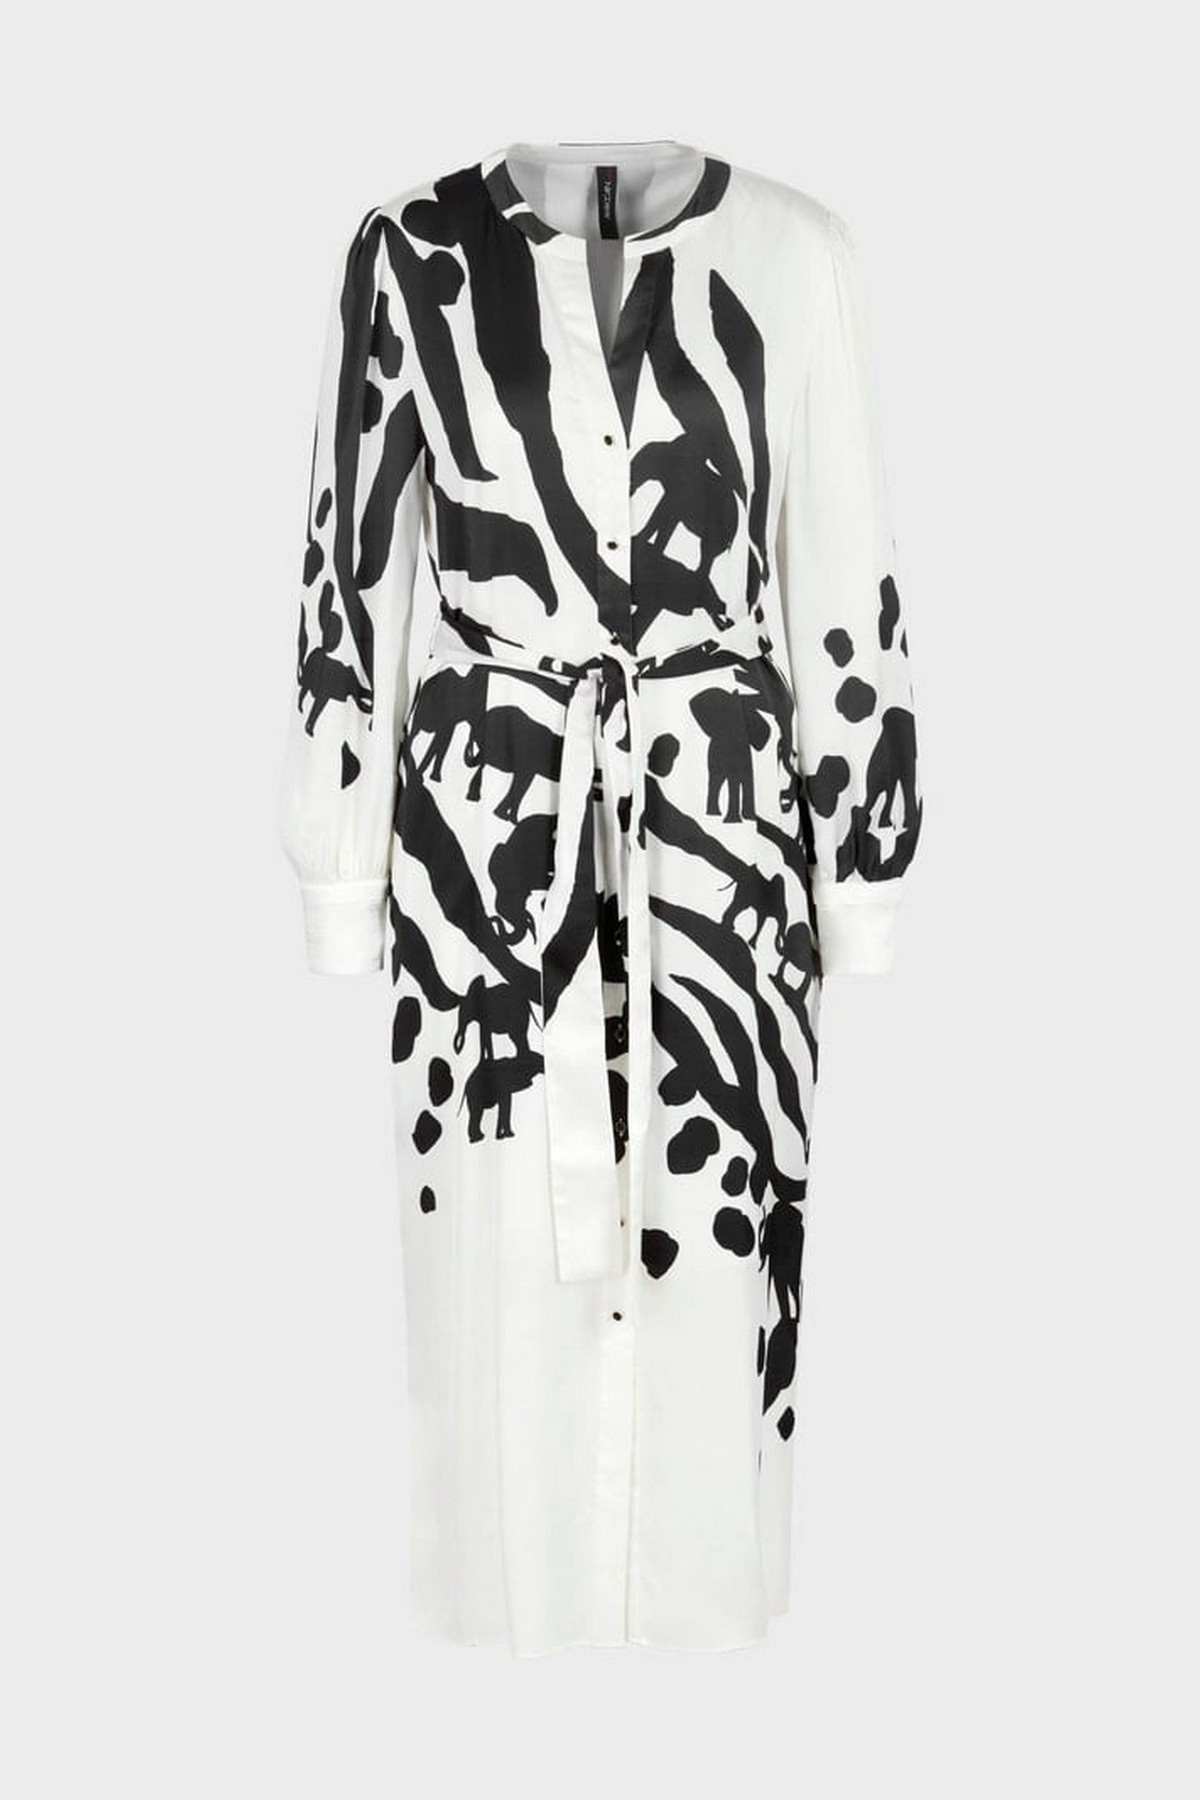 Kleed print in de kleur wit zwart van het merk Marc Cain Collections